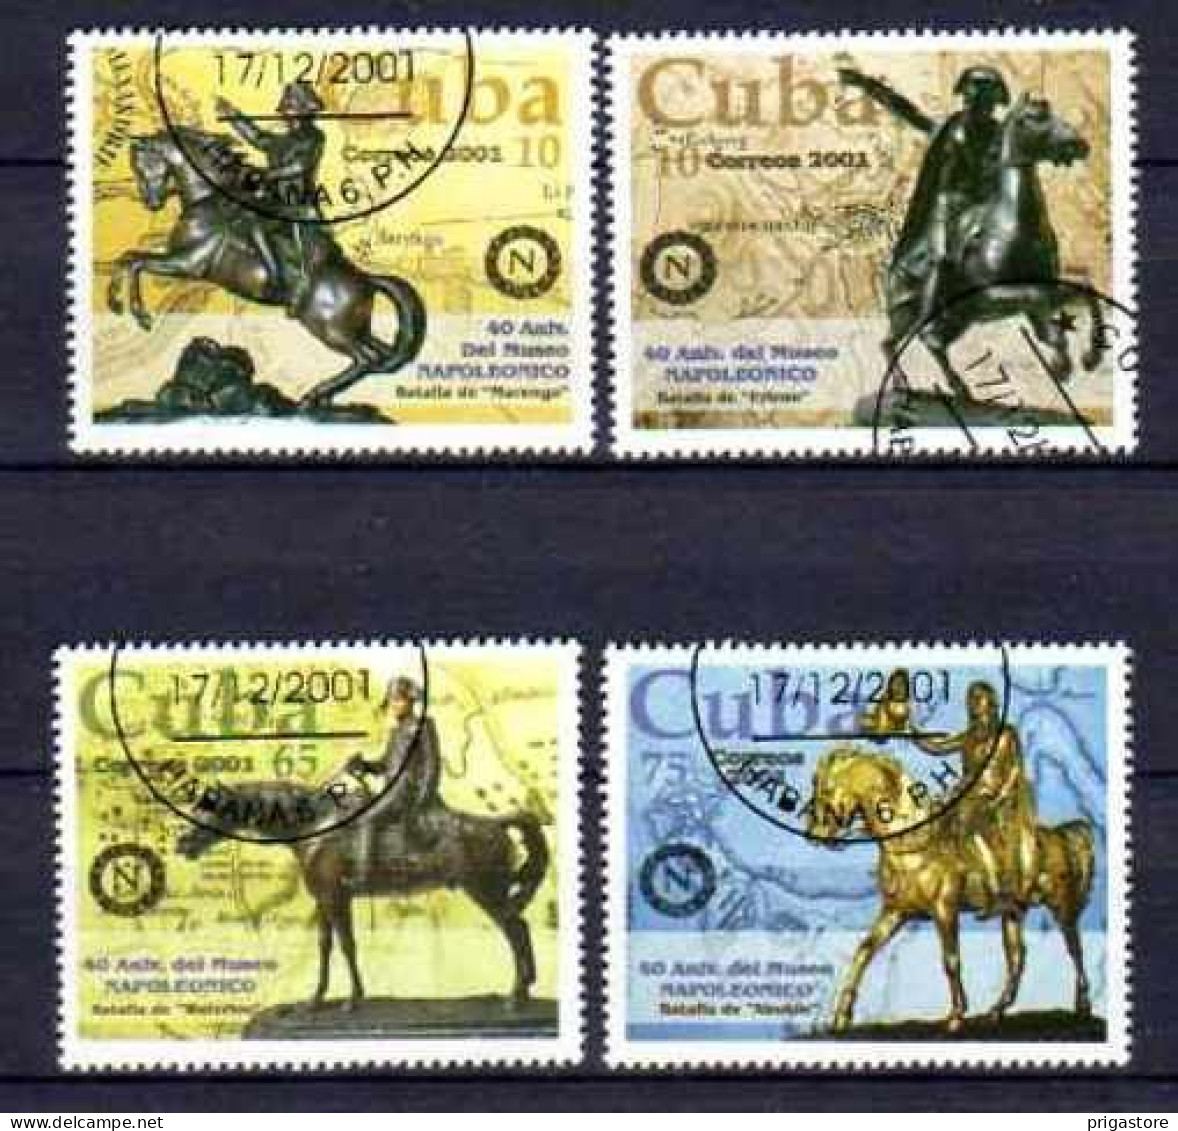 Chevaux Cuba 2001 (4) Yvert N° 3964 à 3967 Oblitéré Used - Pferde